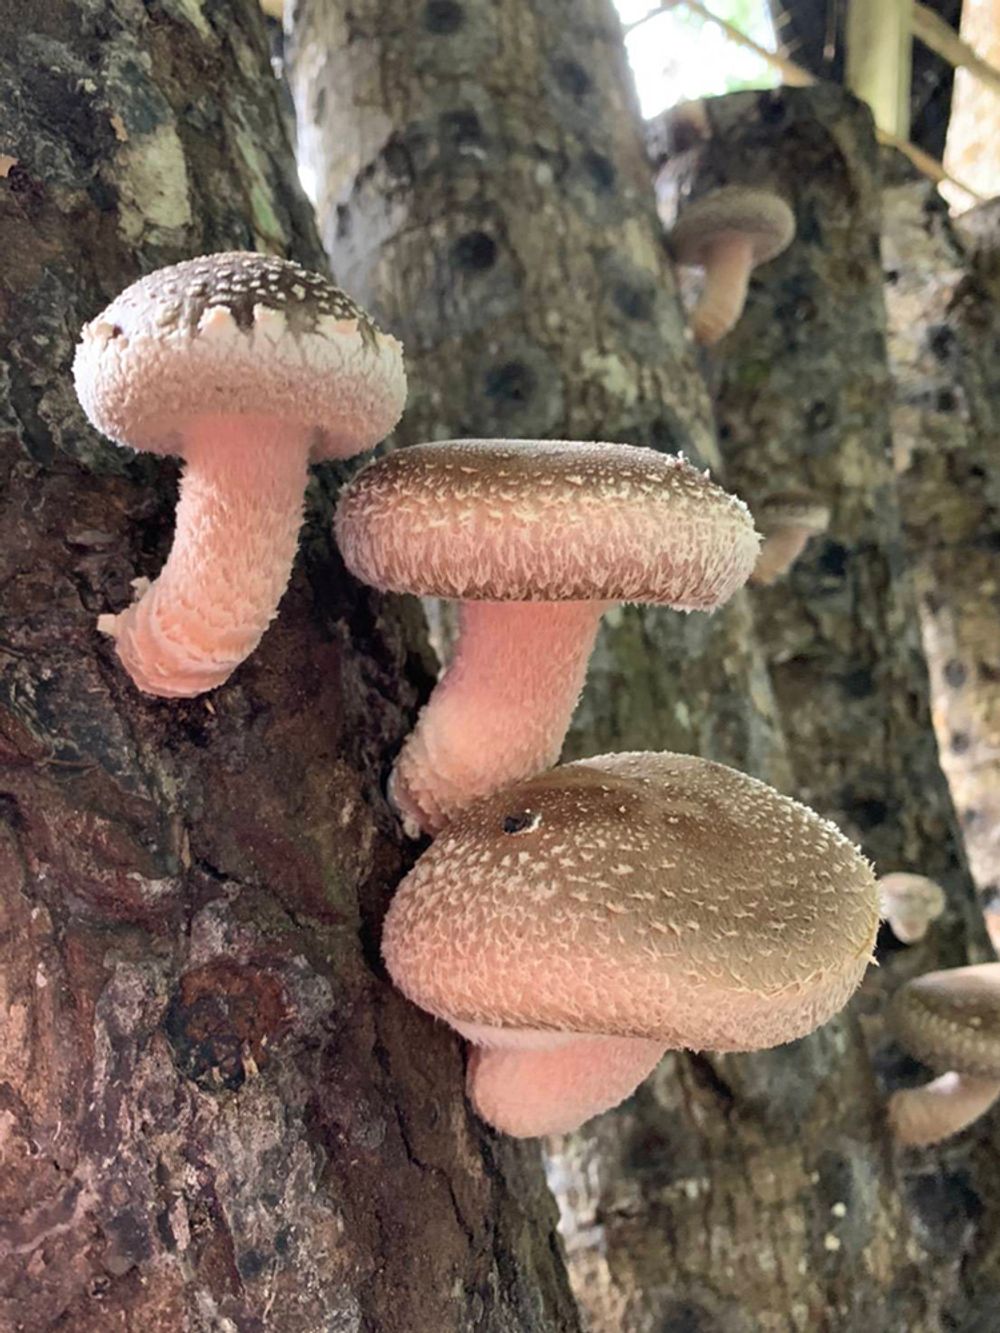 溪頭低溫潮濕的環境使得段木香菇碩大肥厚。